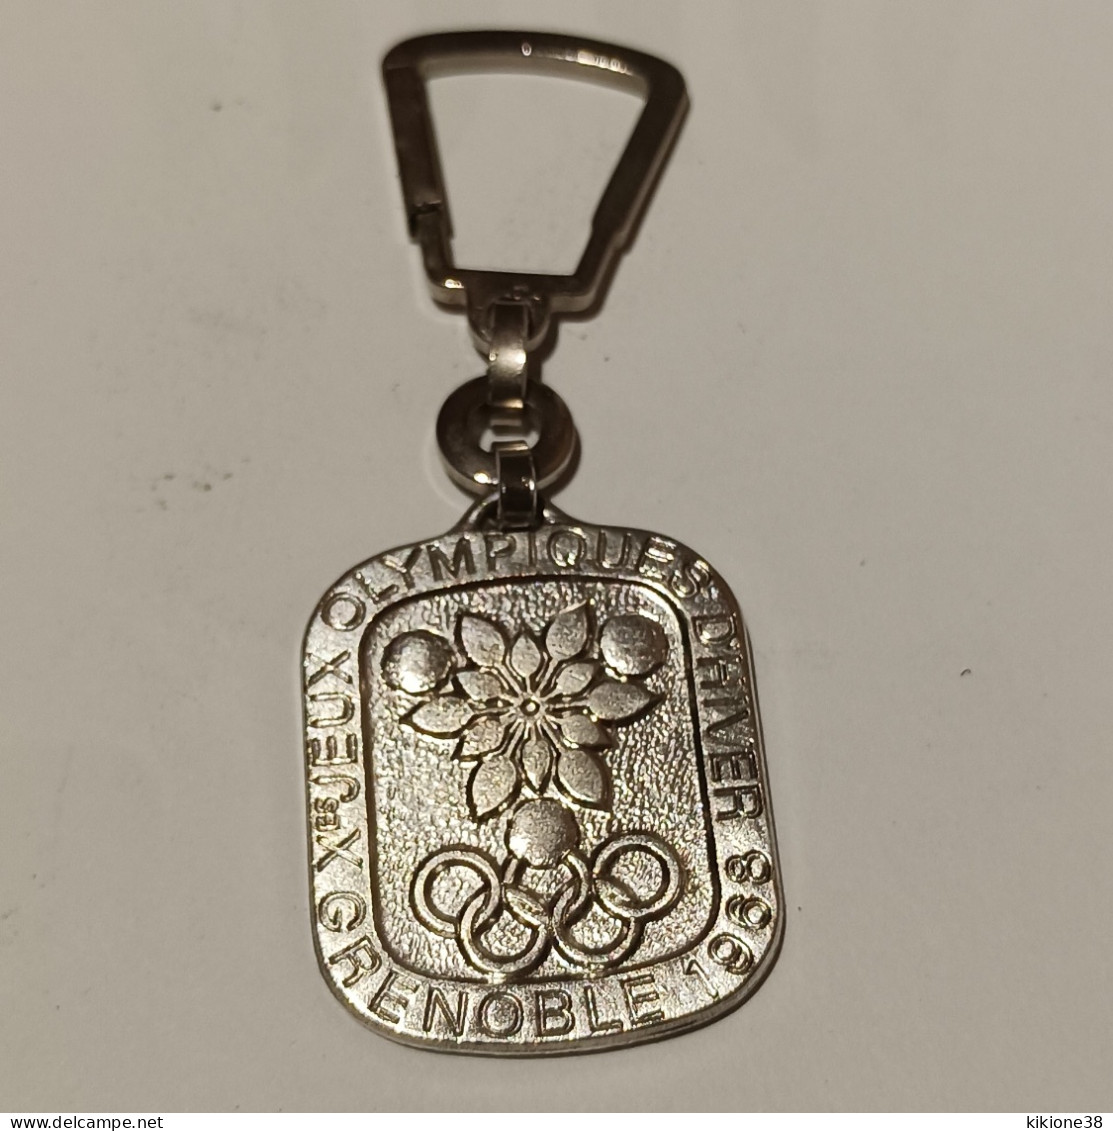 Porte Clé Des Jeux Olympiques De GRENOBLE 1968 En Métal Couleur Argent; Objet Souvenir, Médaille, Badge, Pin's. - Apparel, Souvenirs & Other